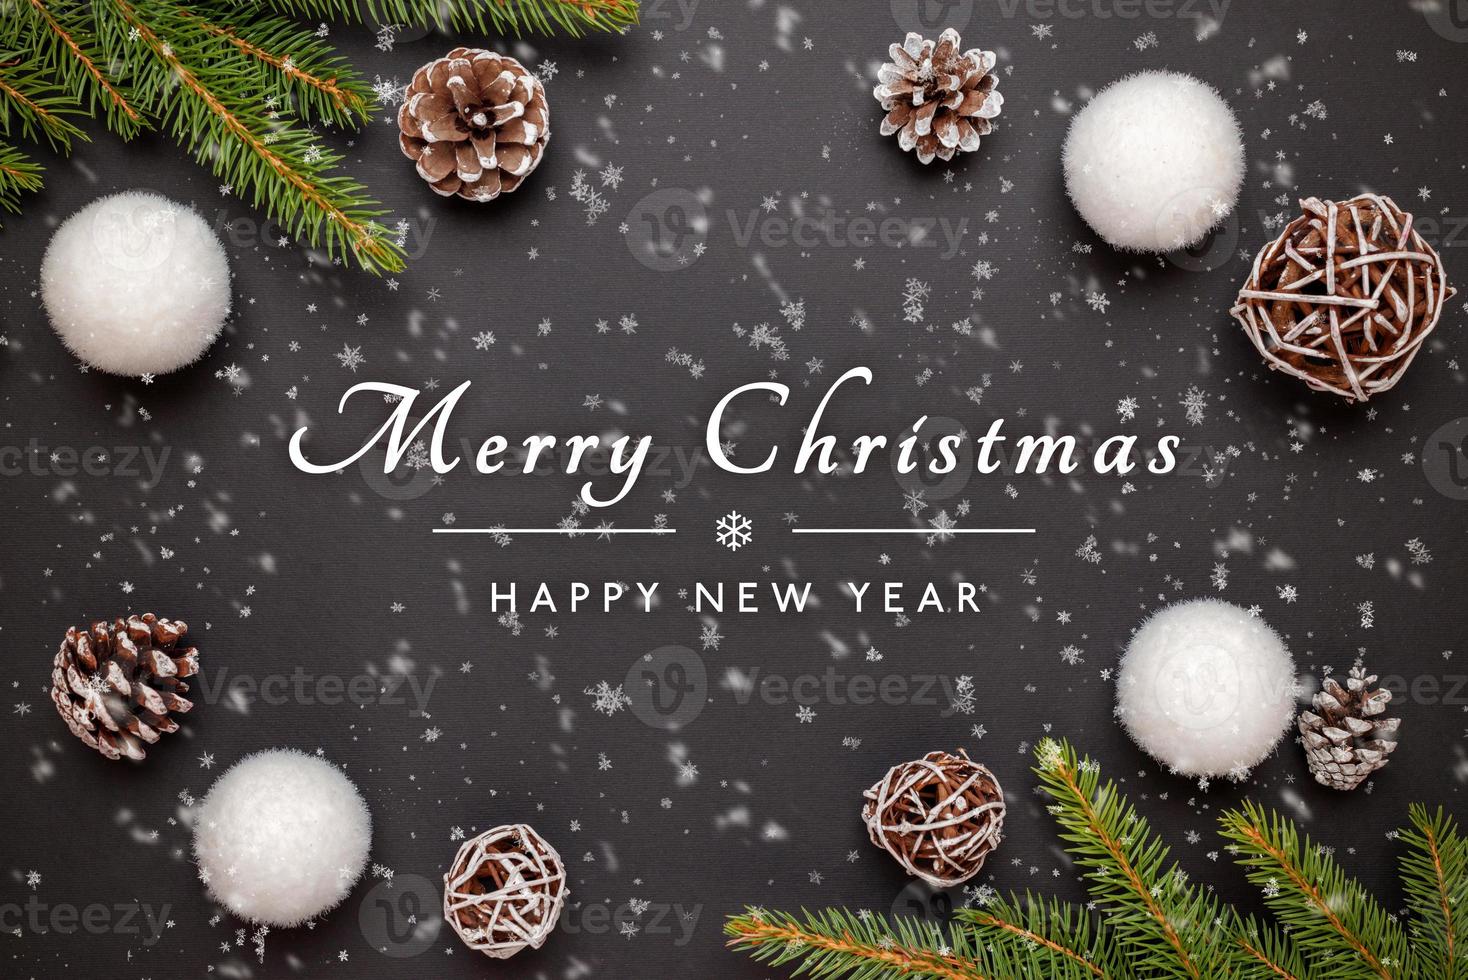 joyeux noël et bonne année carte de voeux avec décorations sur surface noire photo